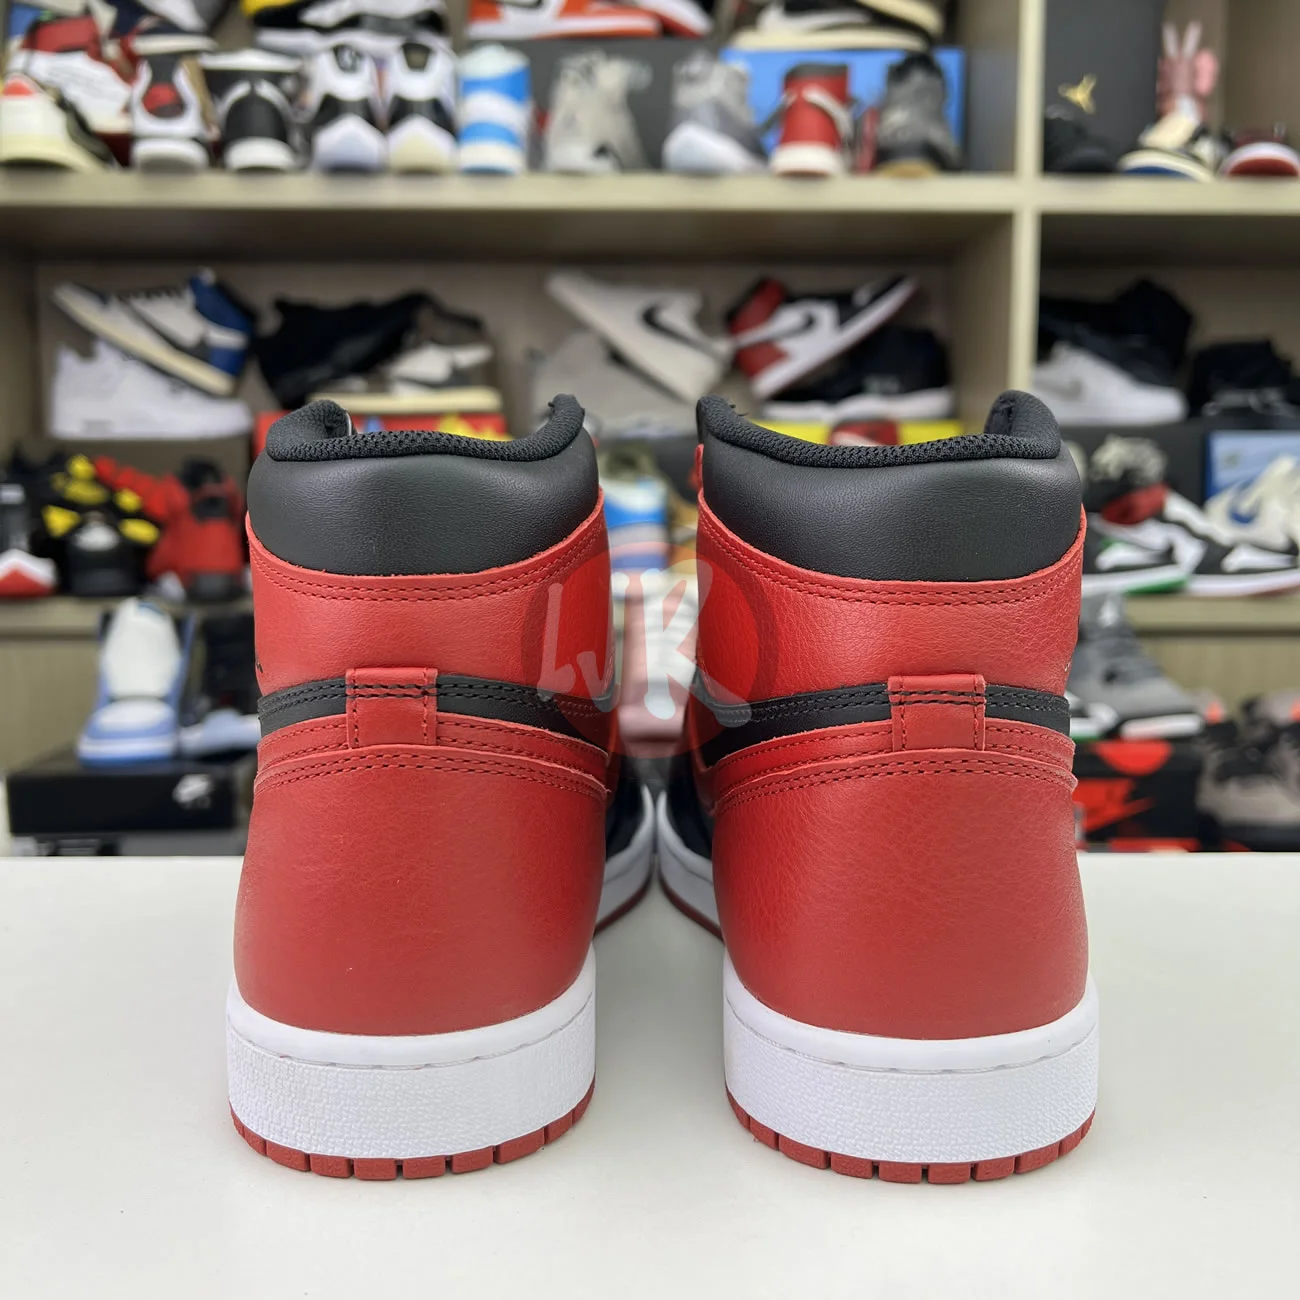 Air Jordan 1 Retro High Bred Banned 2016 555088 001 Ljr Sneakers (2) - bc-ljr.net